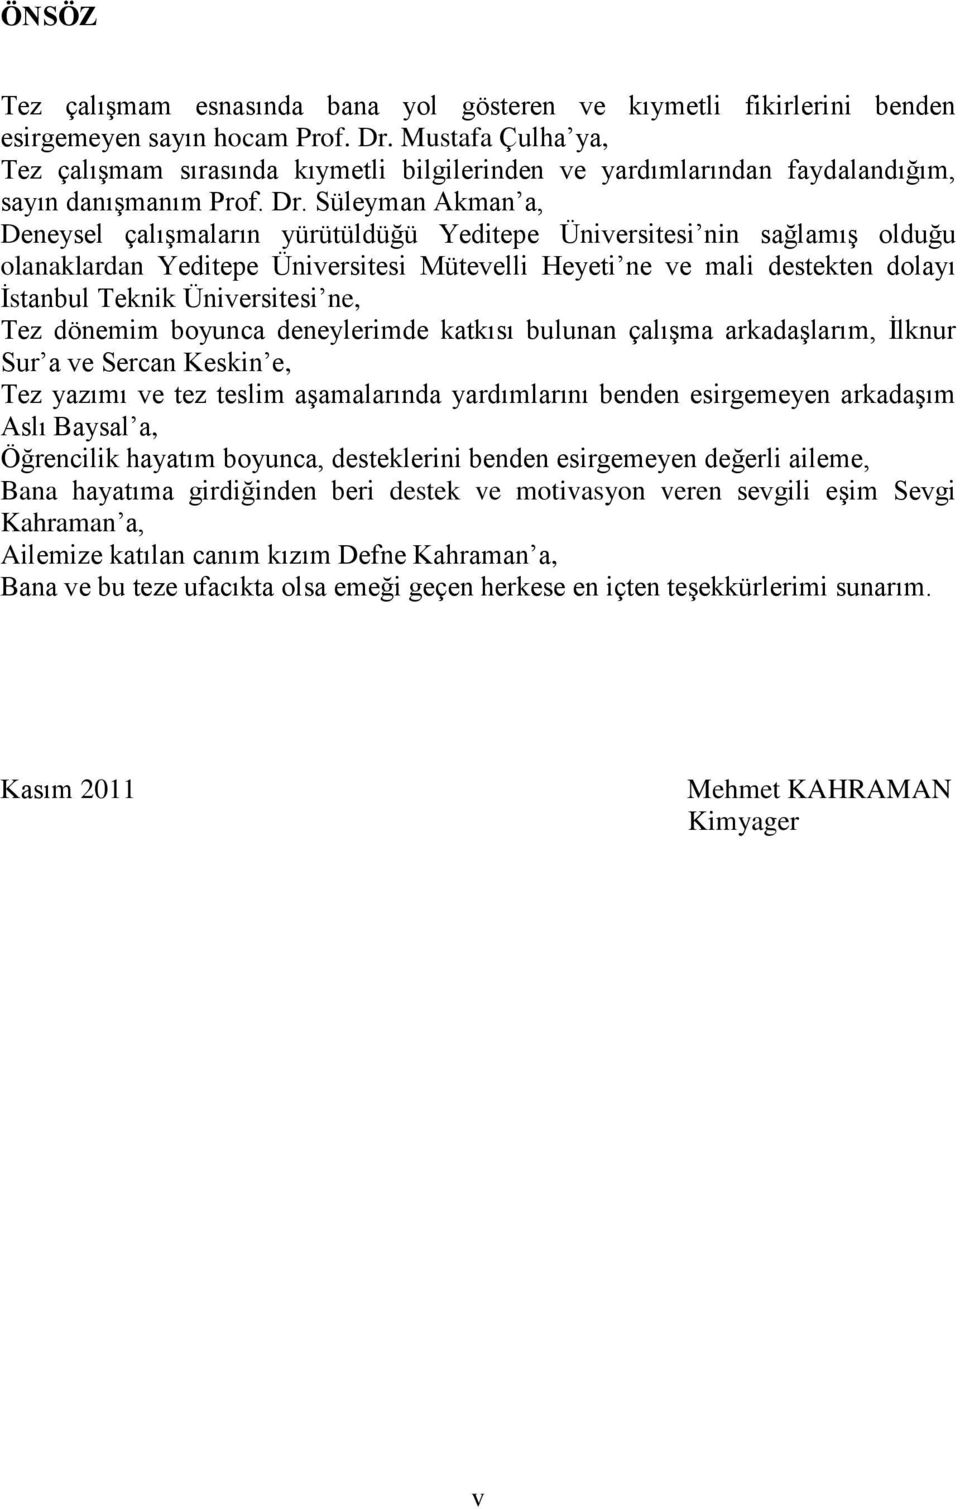 Süleyman Akman a, Deneysel çalışmaların yürütüldüğü Yeditepe Üniversitesi nin sağlamış olduğu olanaklardan Yeditepe Üniversitesi Mütevelli Heyeti ne ve mali destekten dolayı İstanbul Teknik